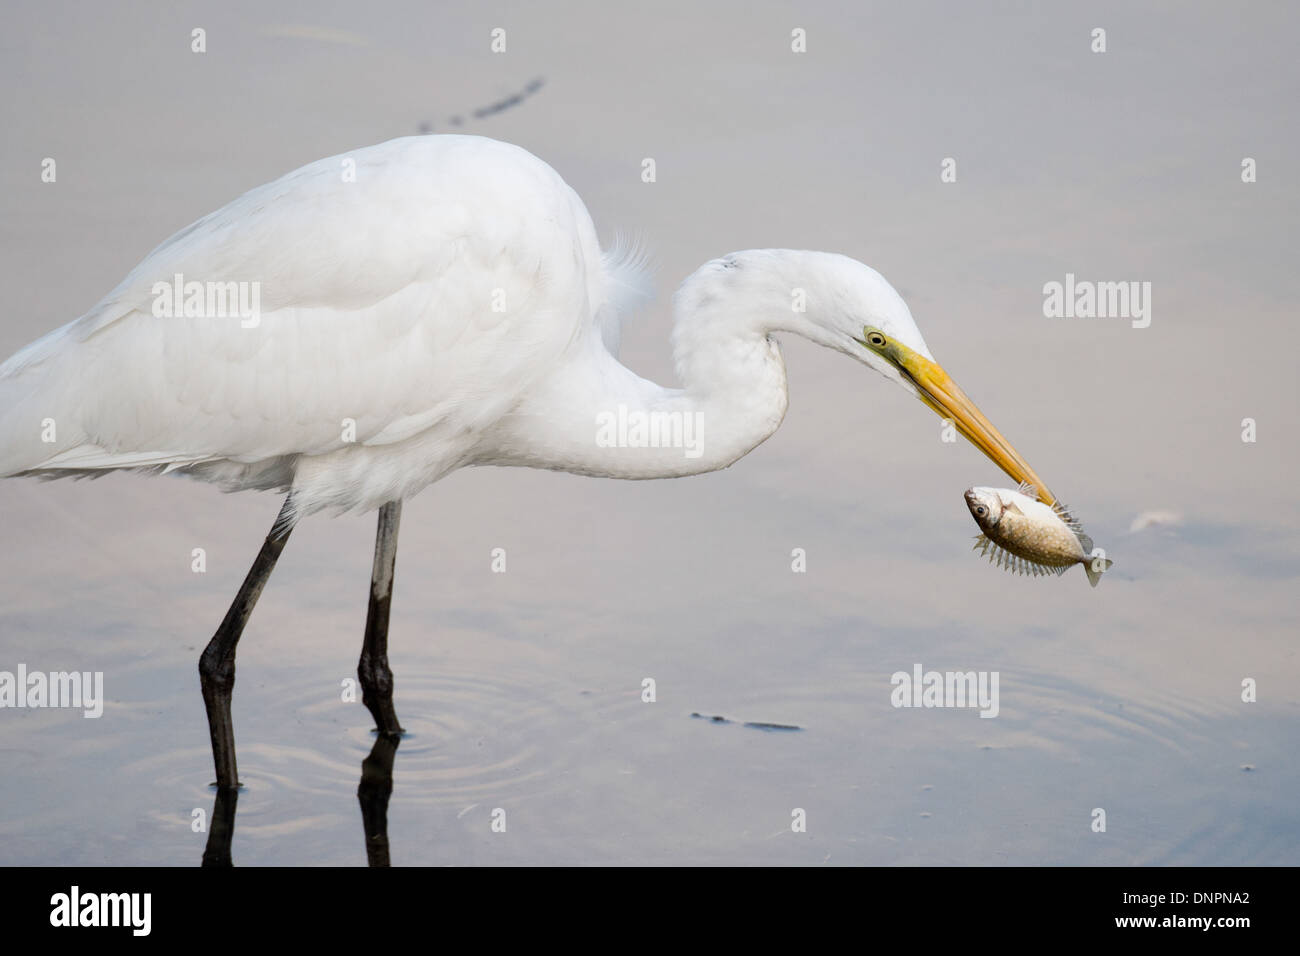 Delta del rio perla fotografías e imágenes de alta resolución - Alamy